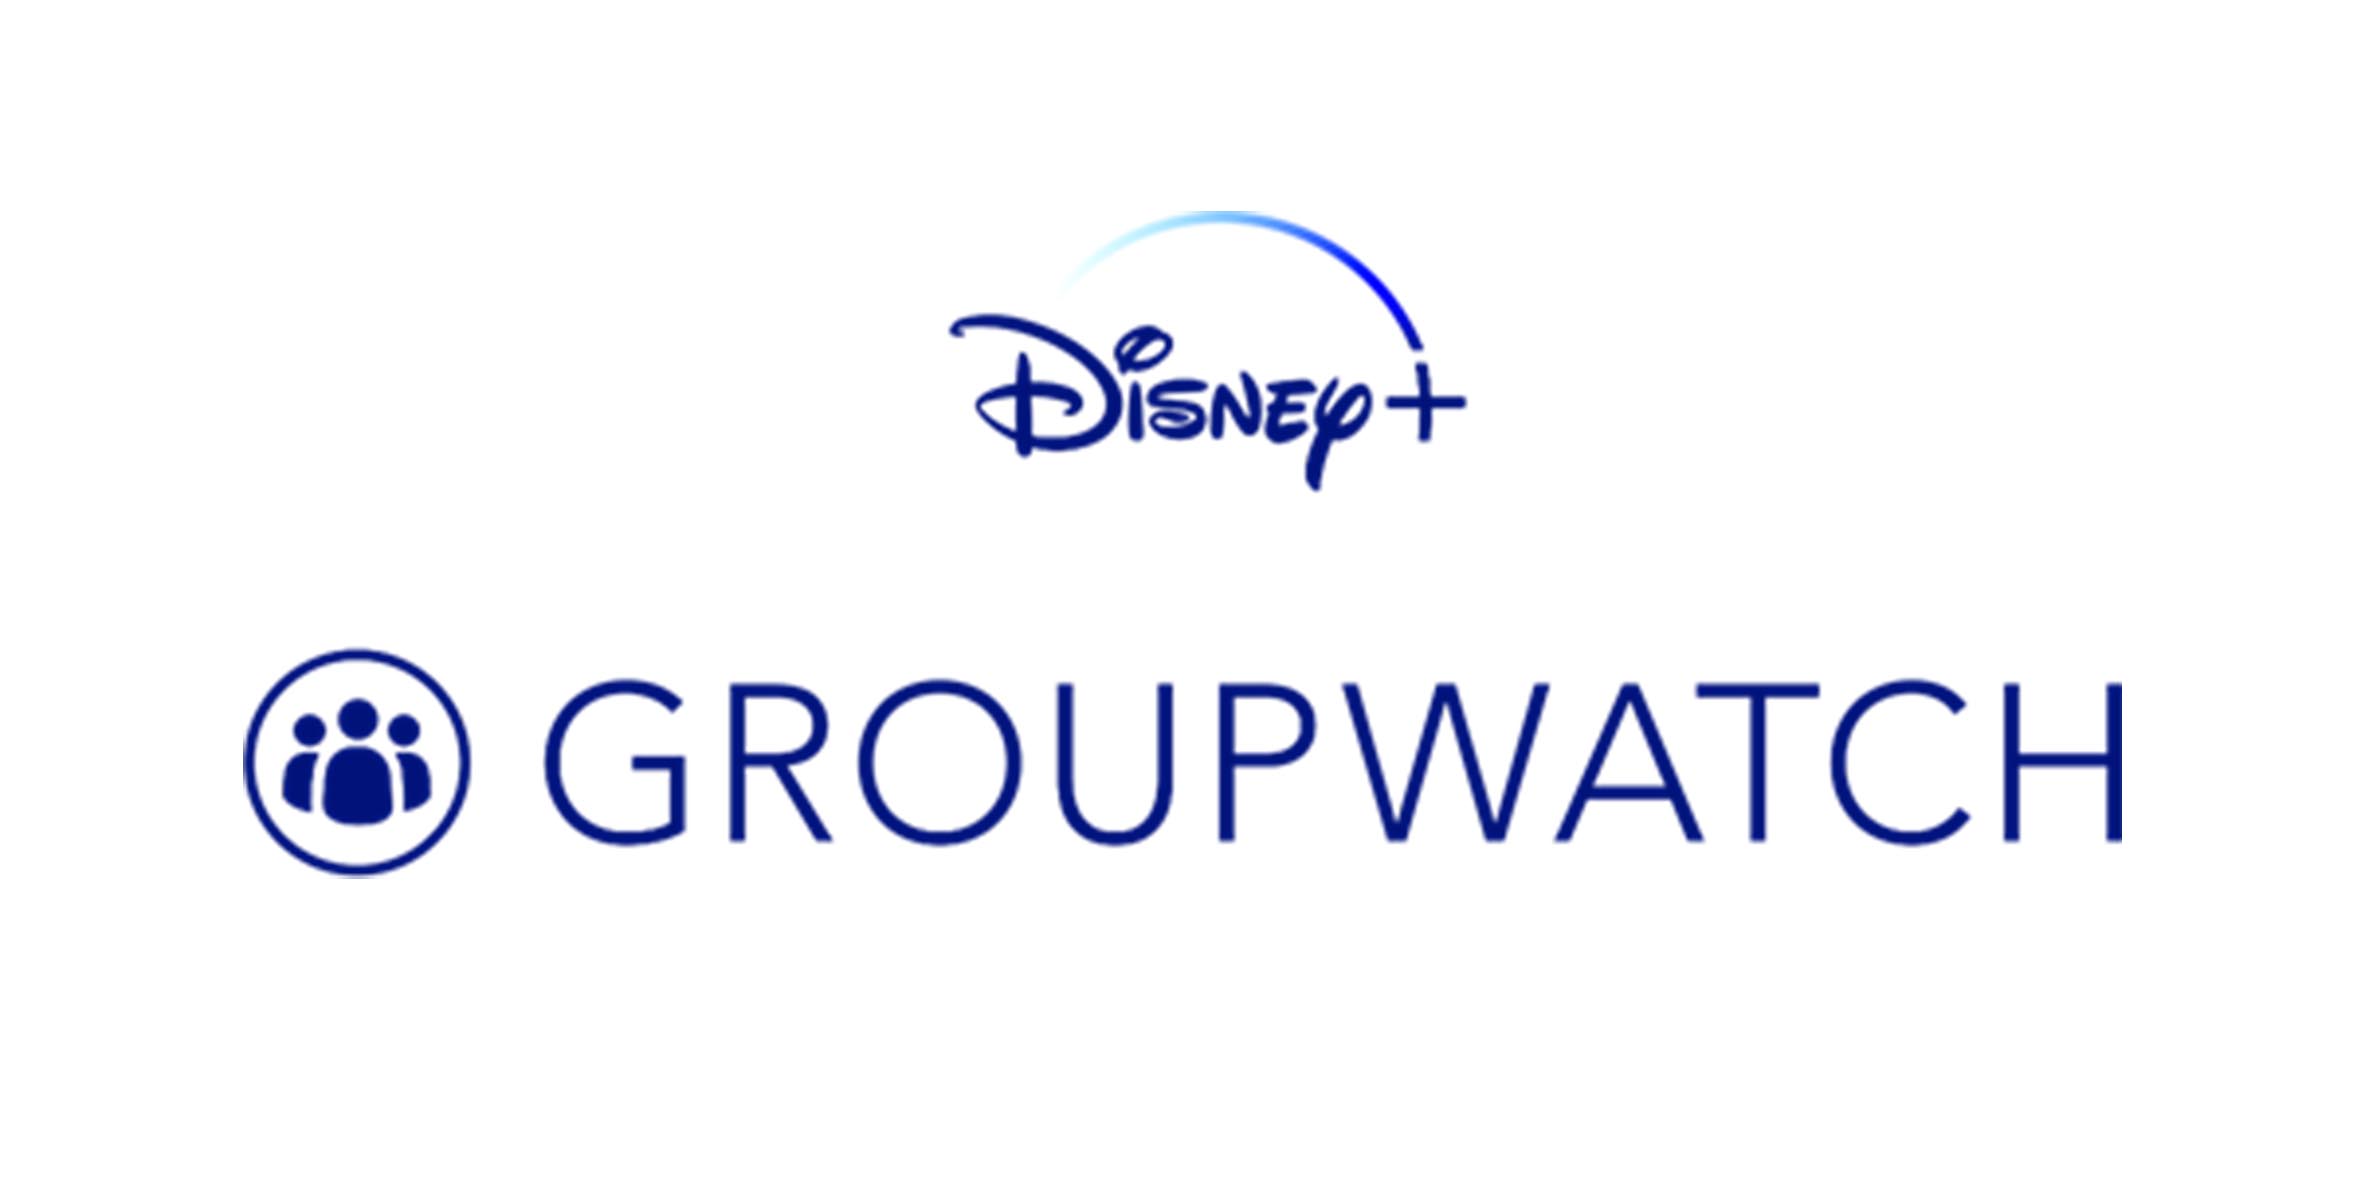 Disney+ lanza en España GroupWatch